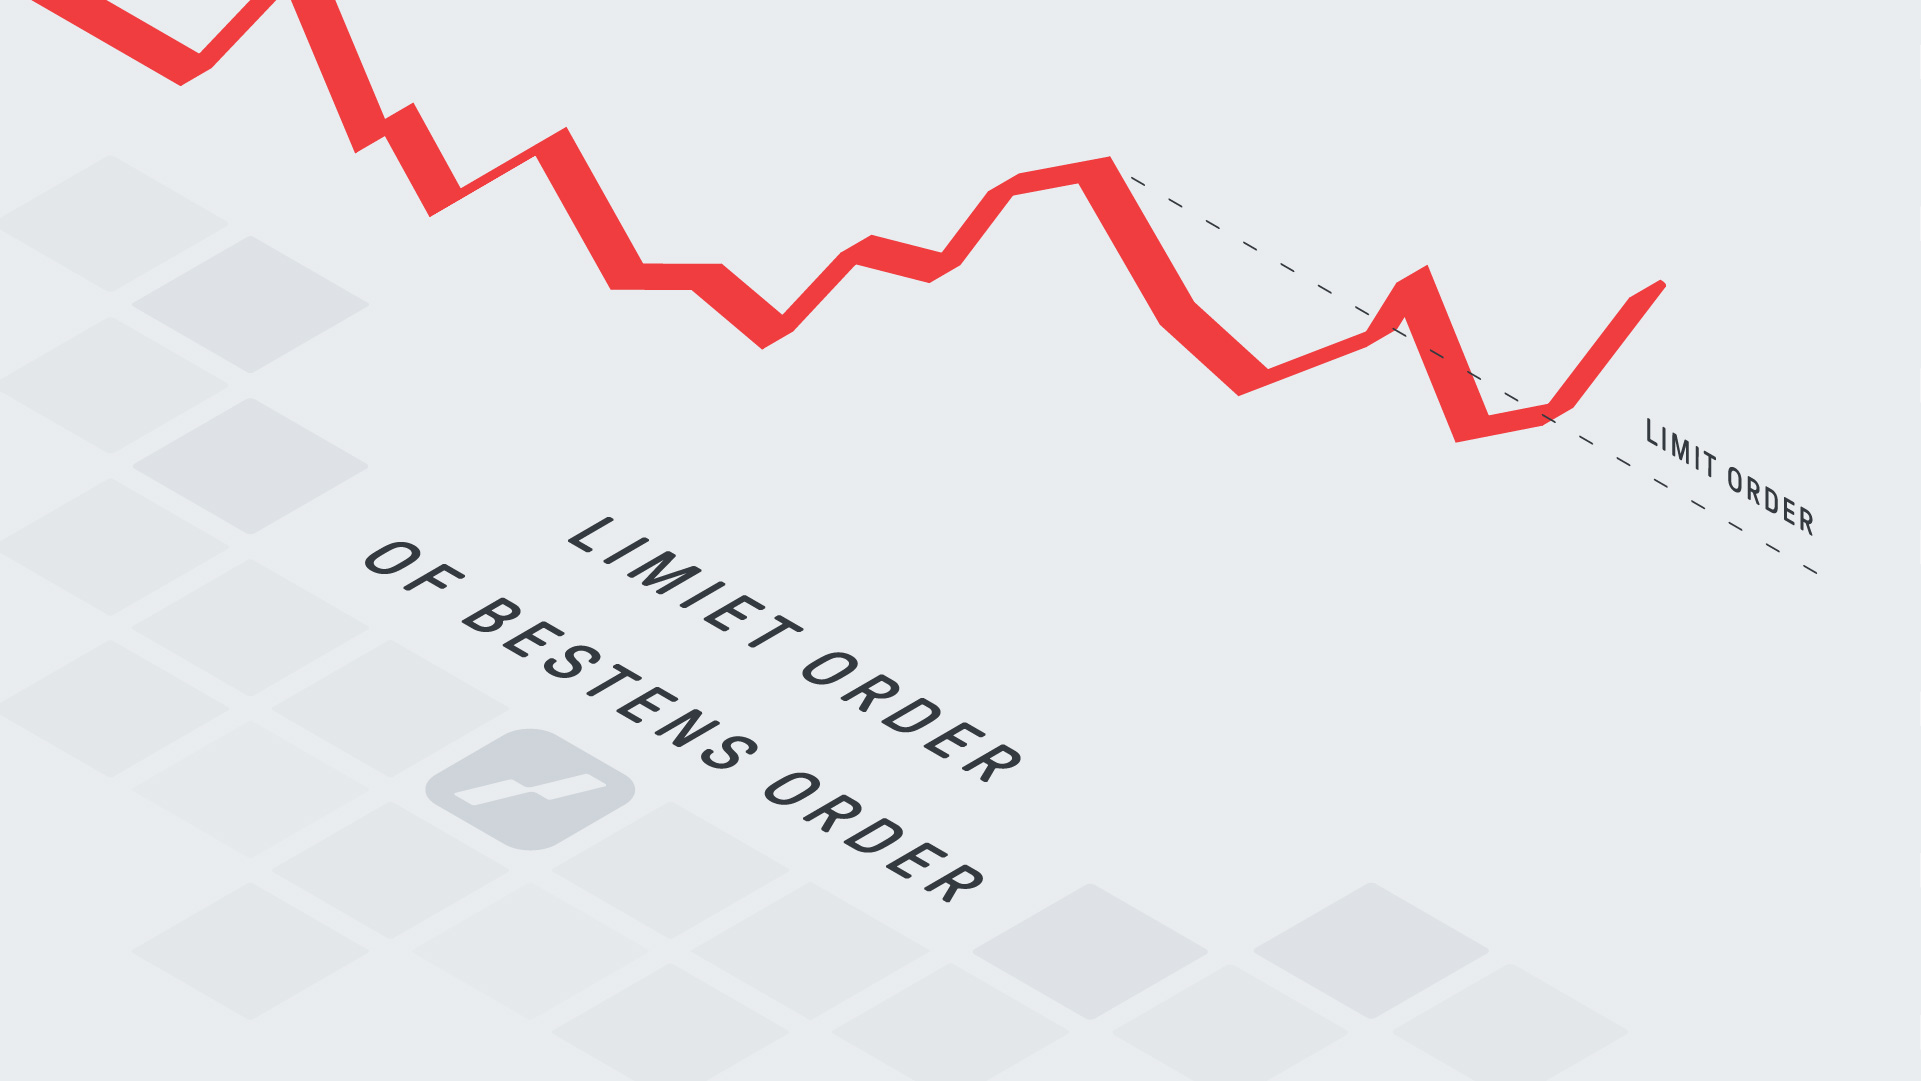 Limiet order - bestens order - market order